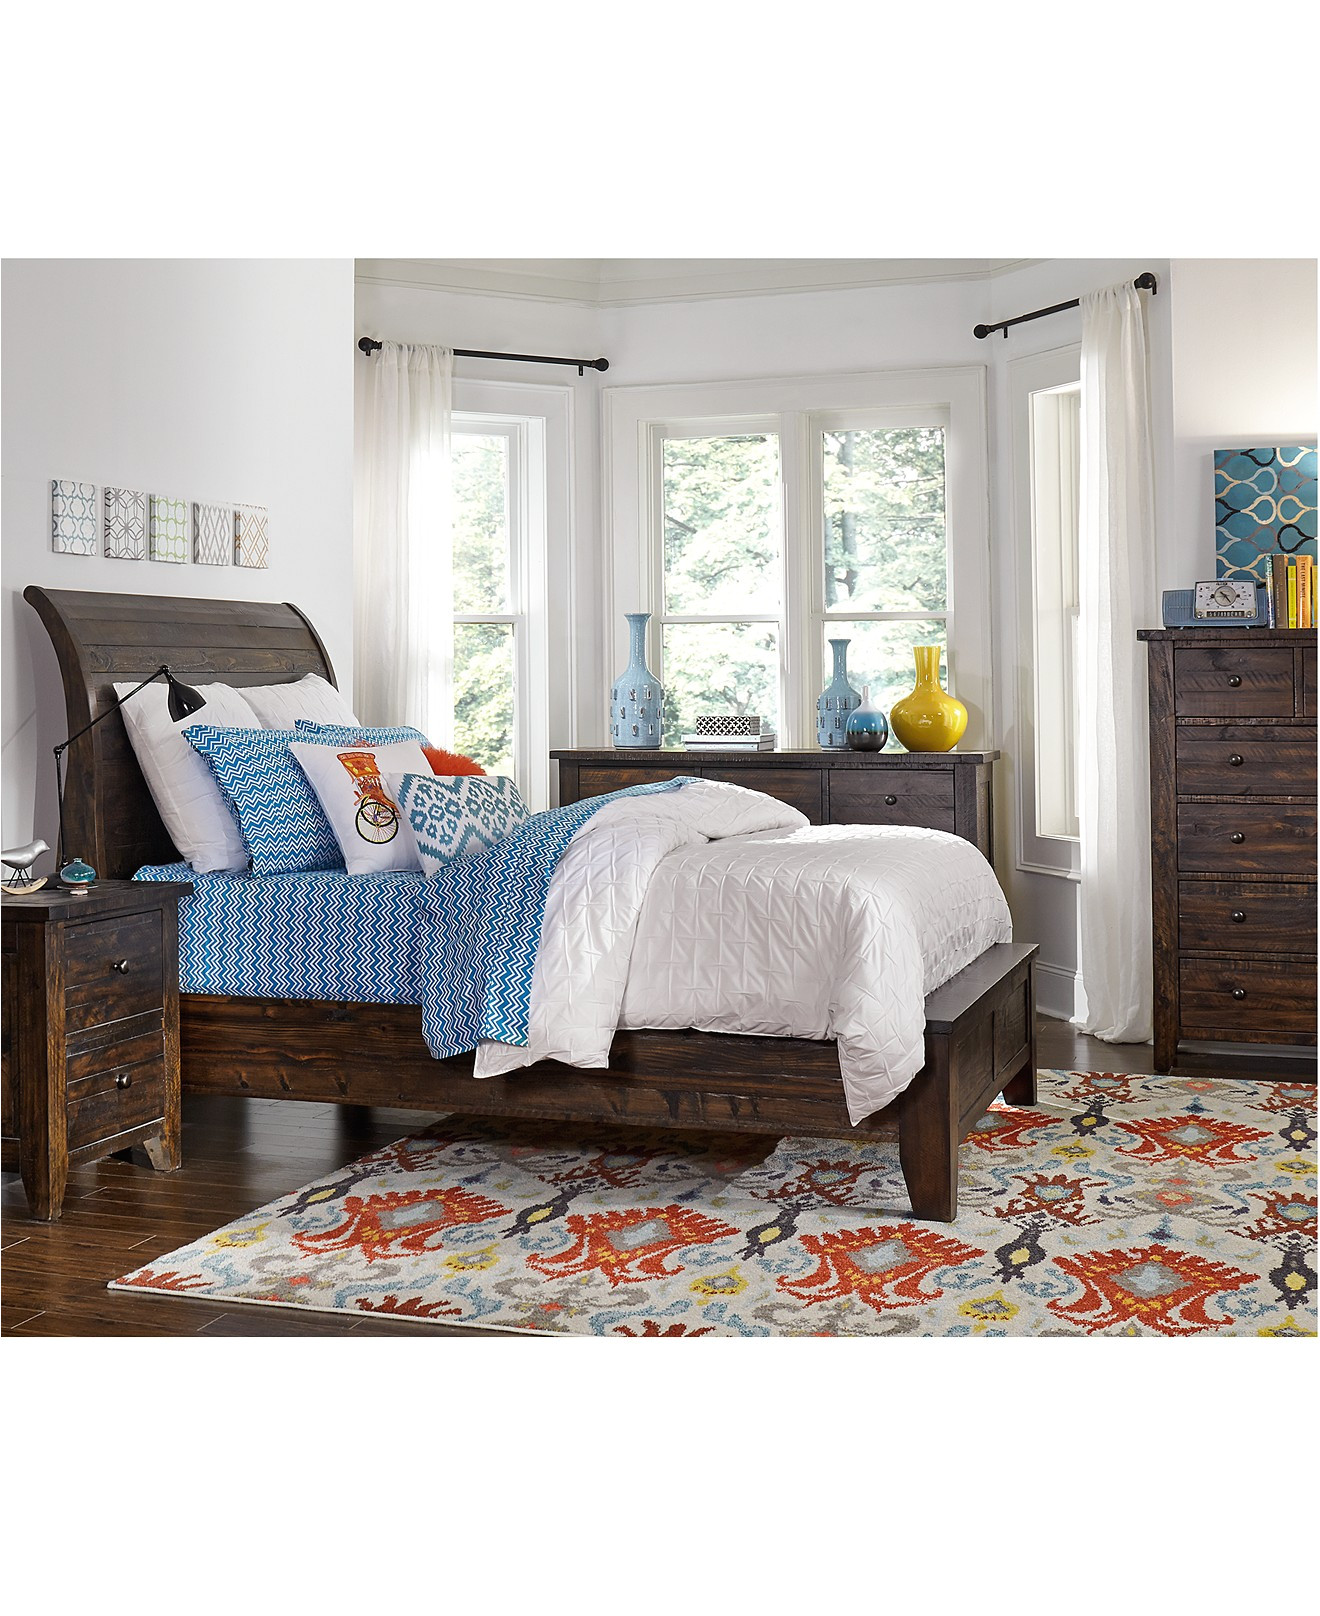 american freight bedroom sets macy s bedroom furniture macys bedroom furniture solid wood sets